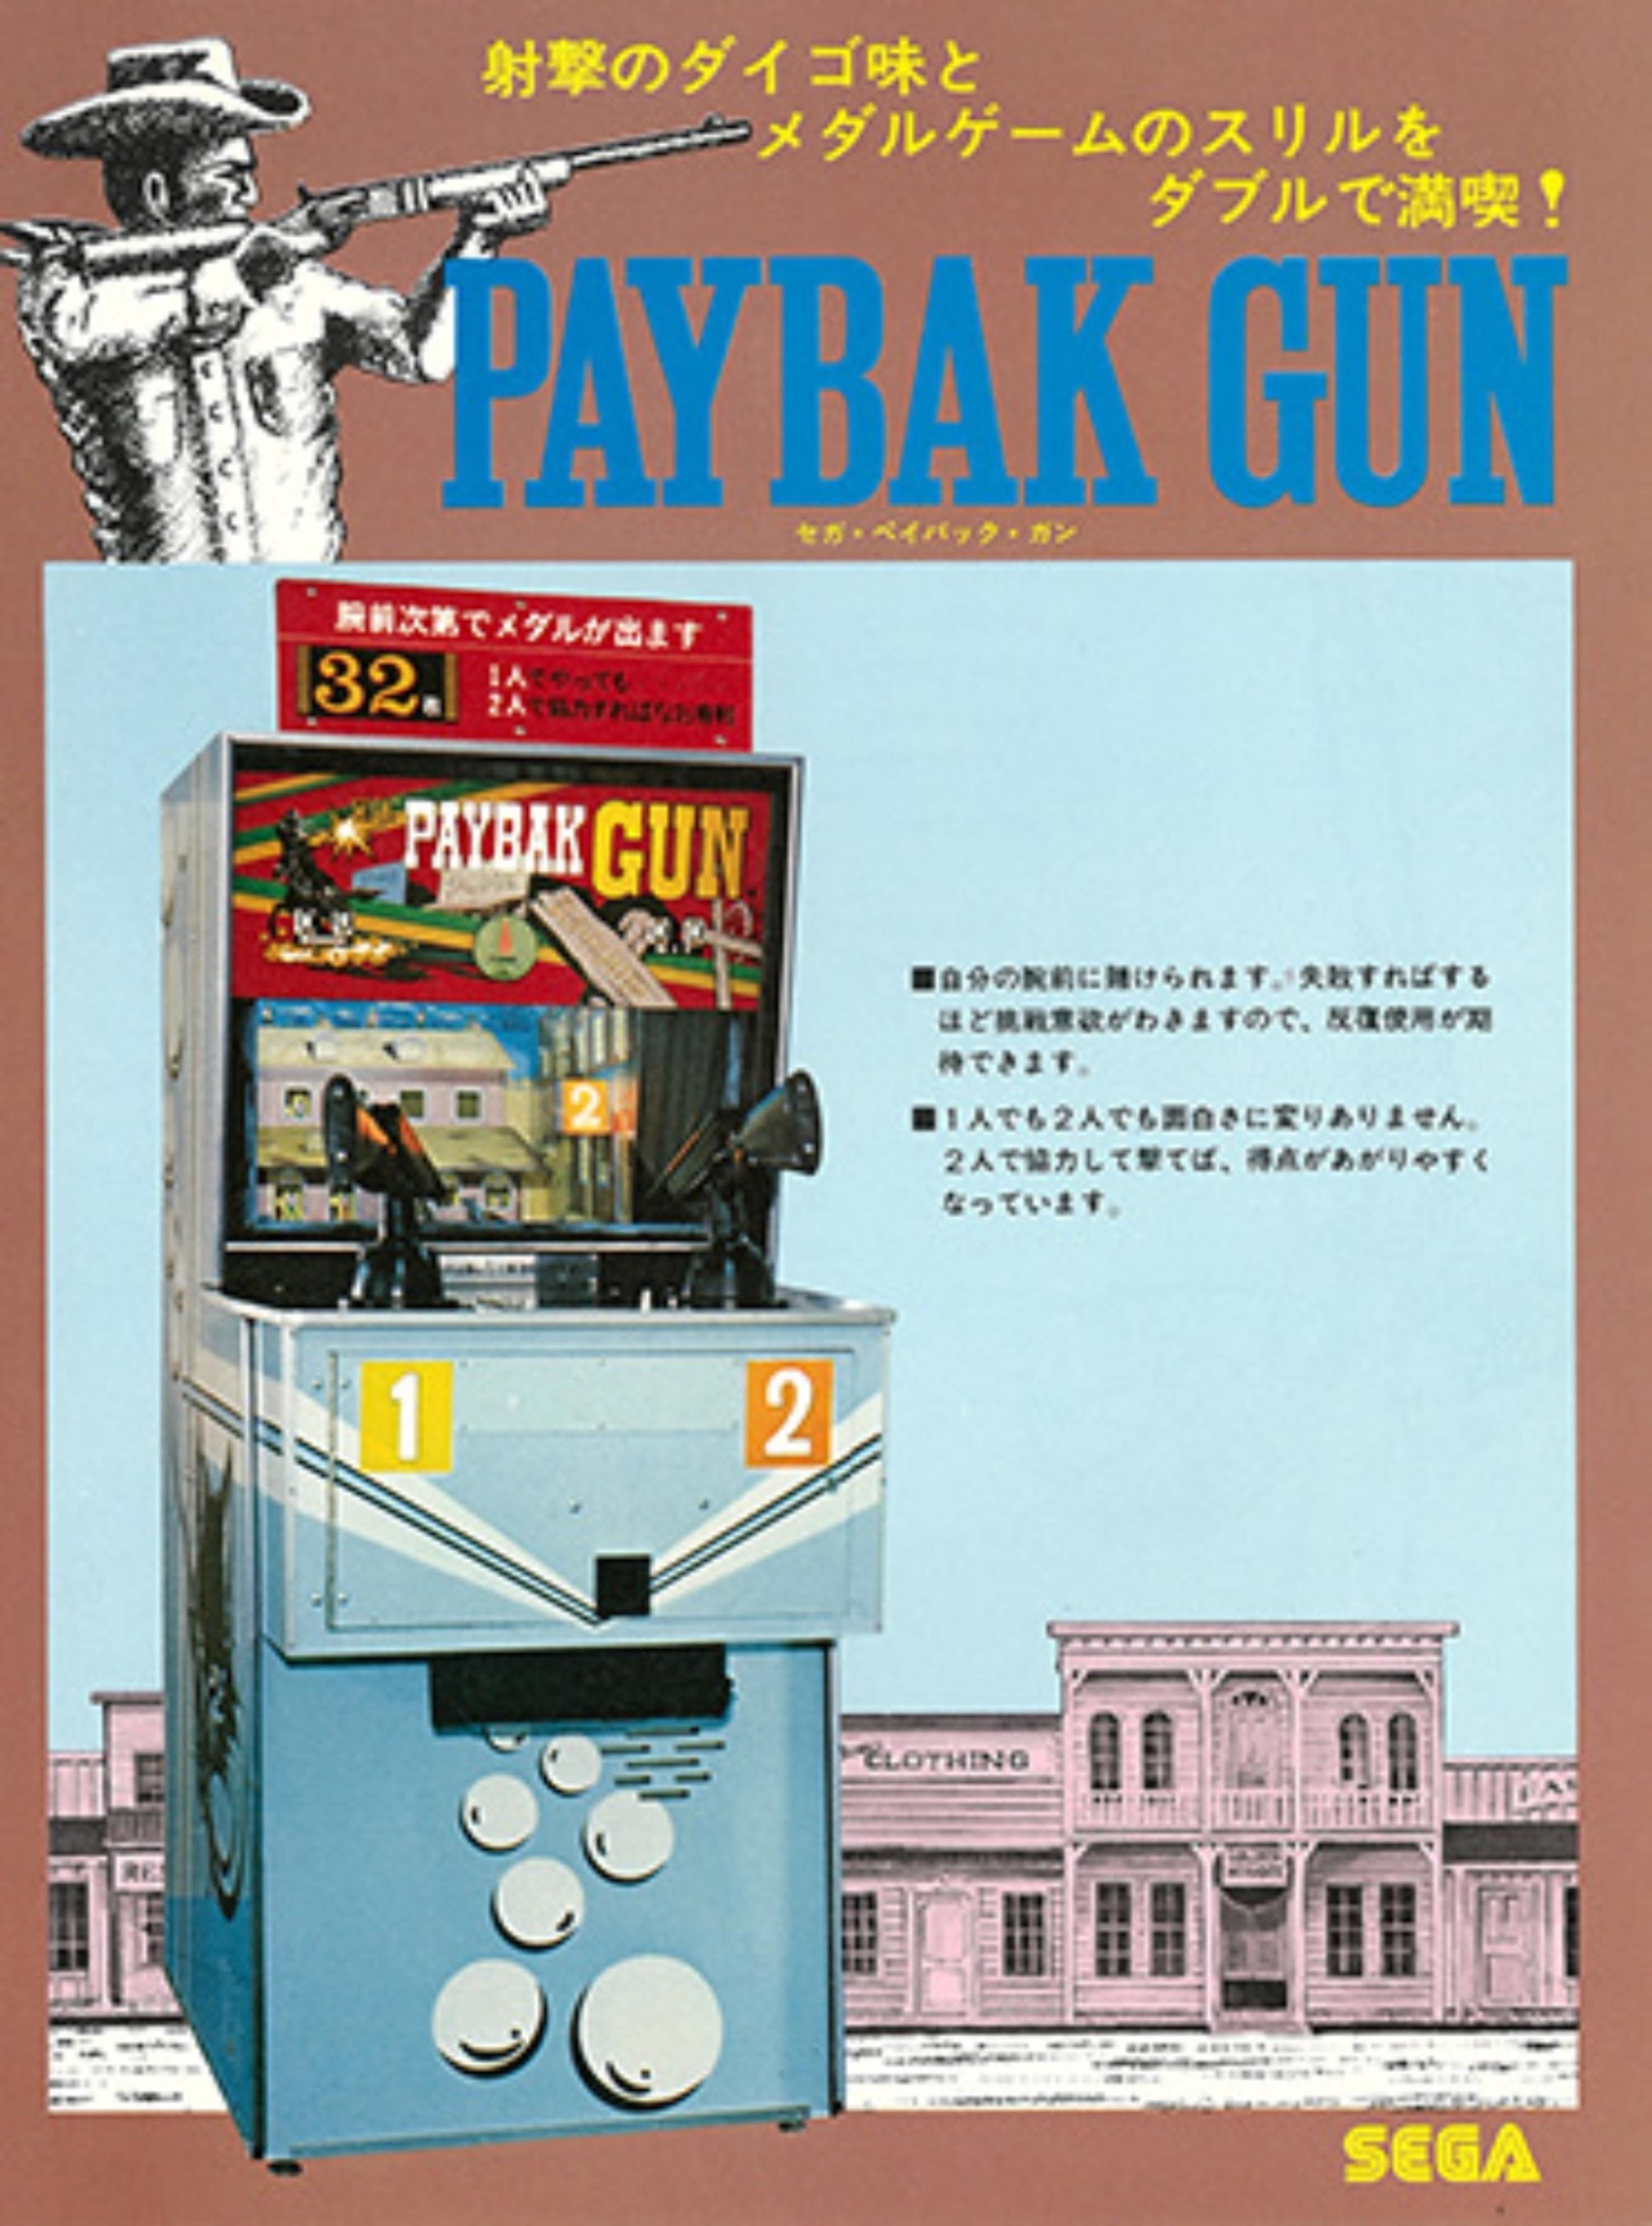 PaybakGun DL JP flyer.pdf